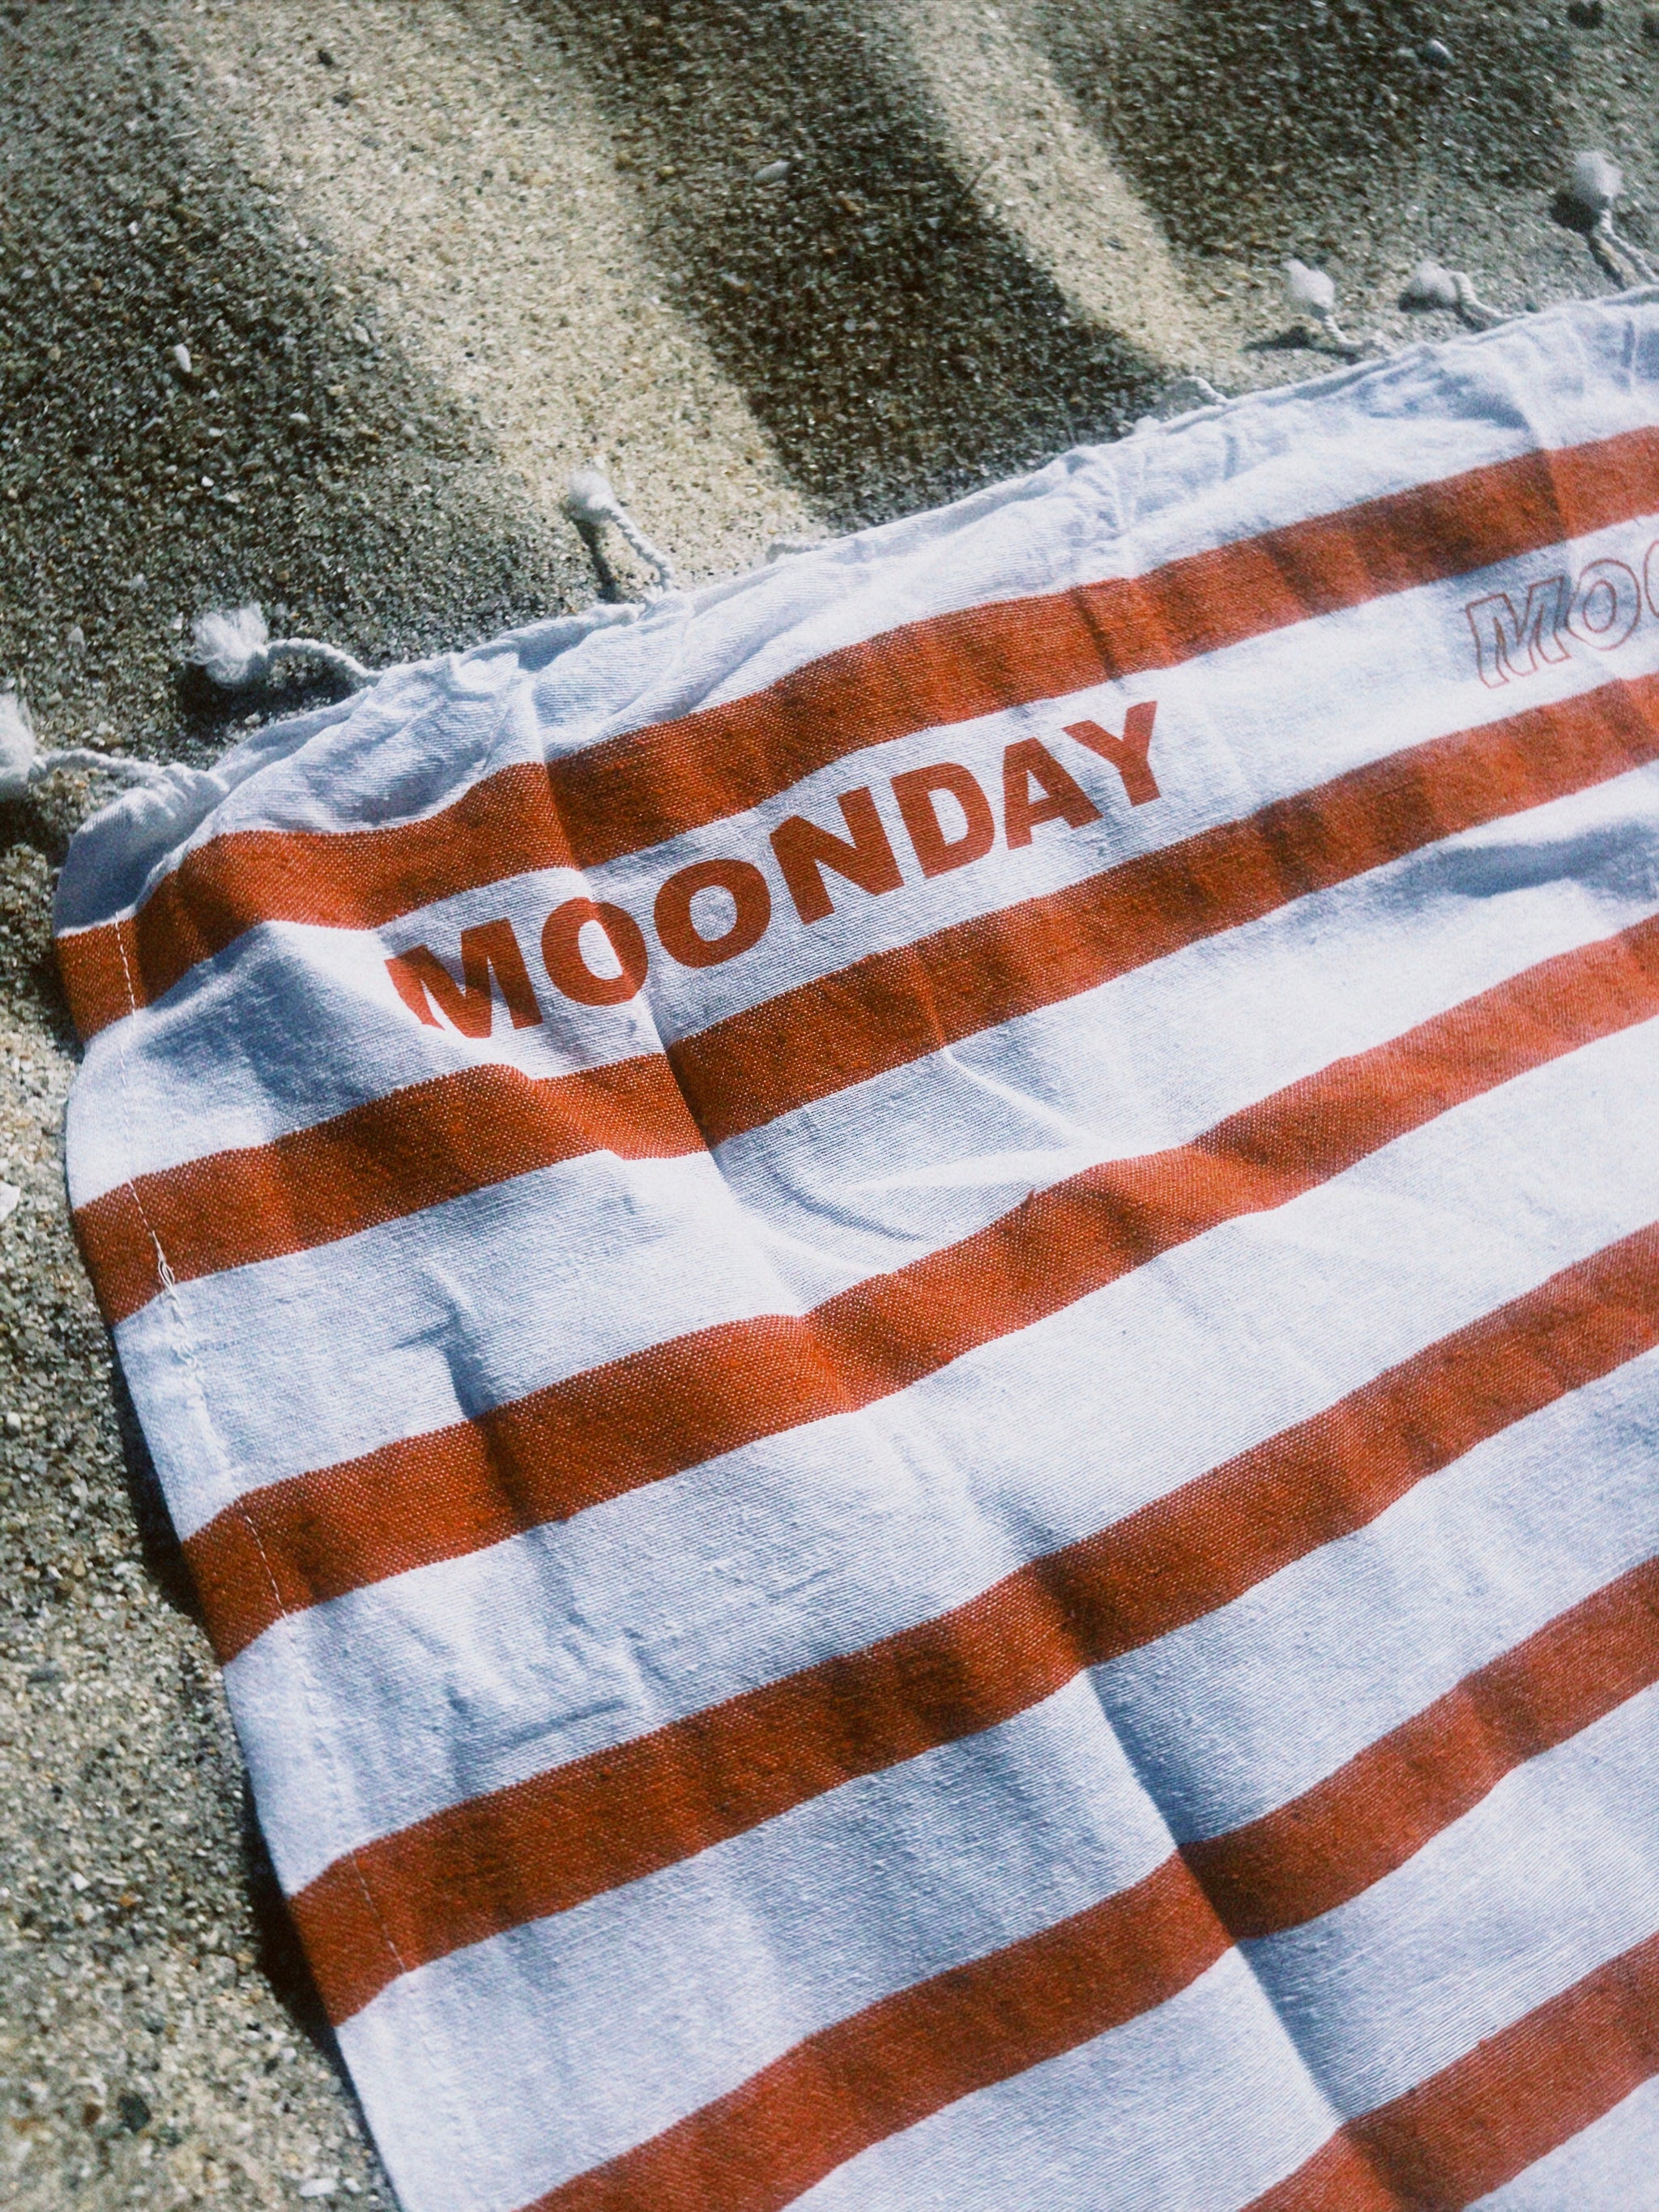 Moonday towel